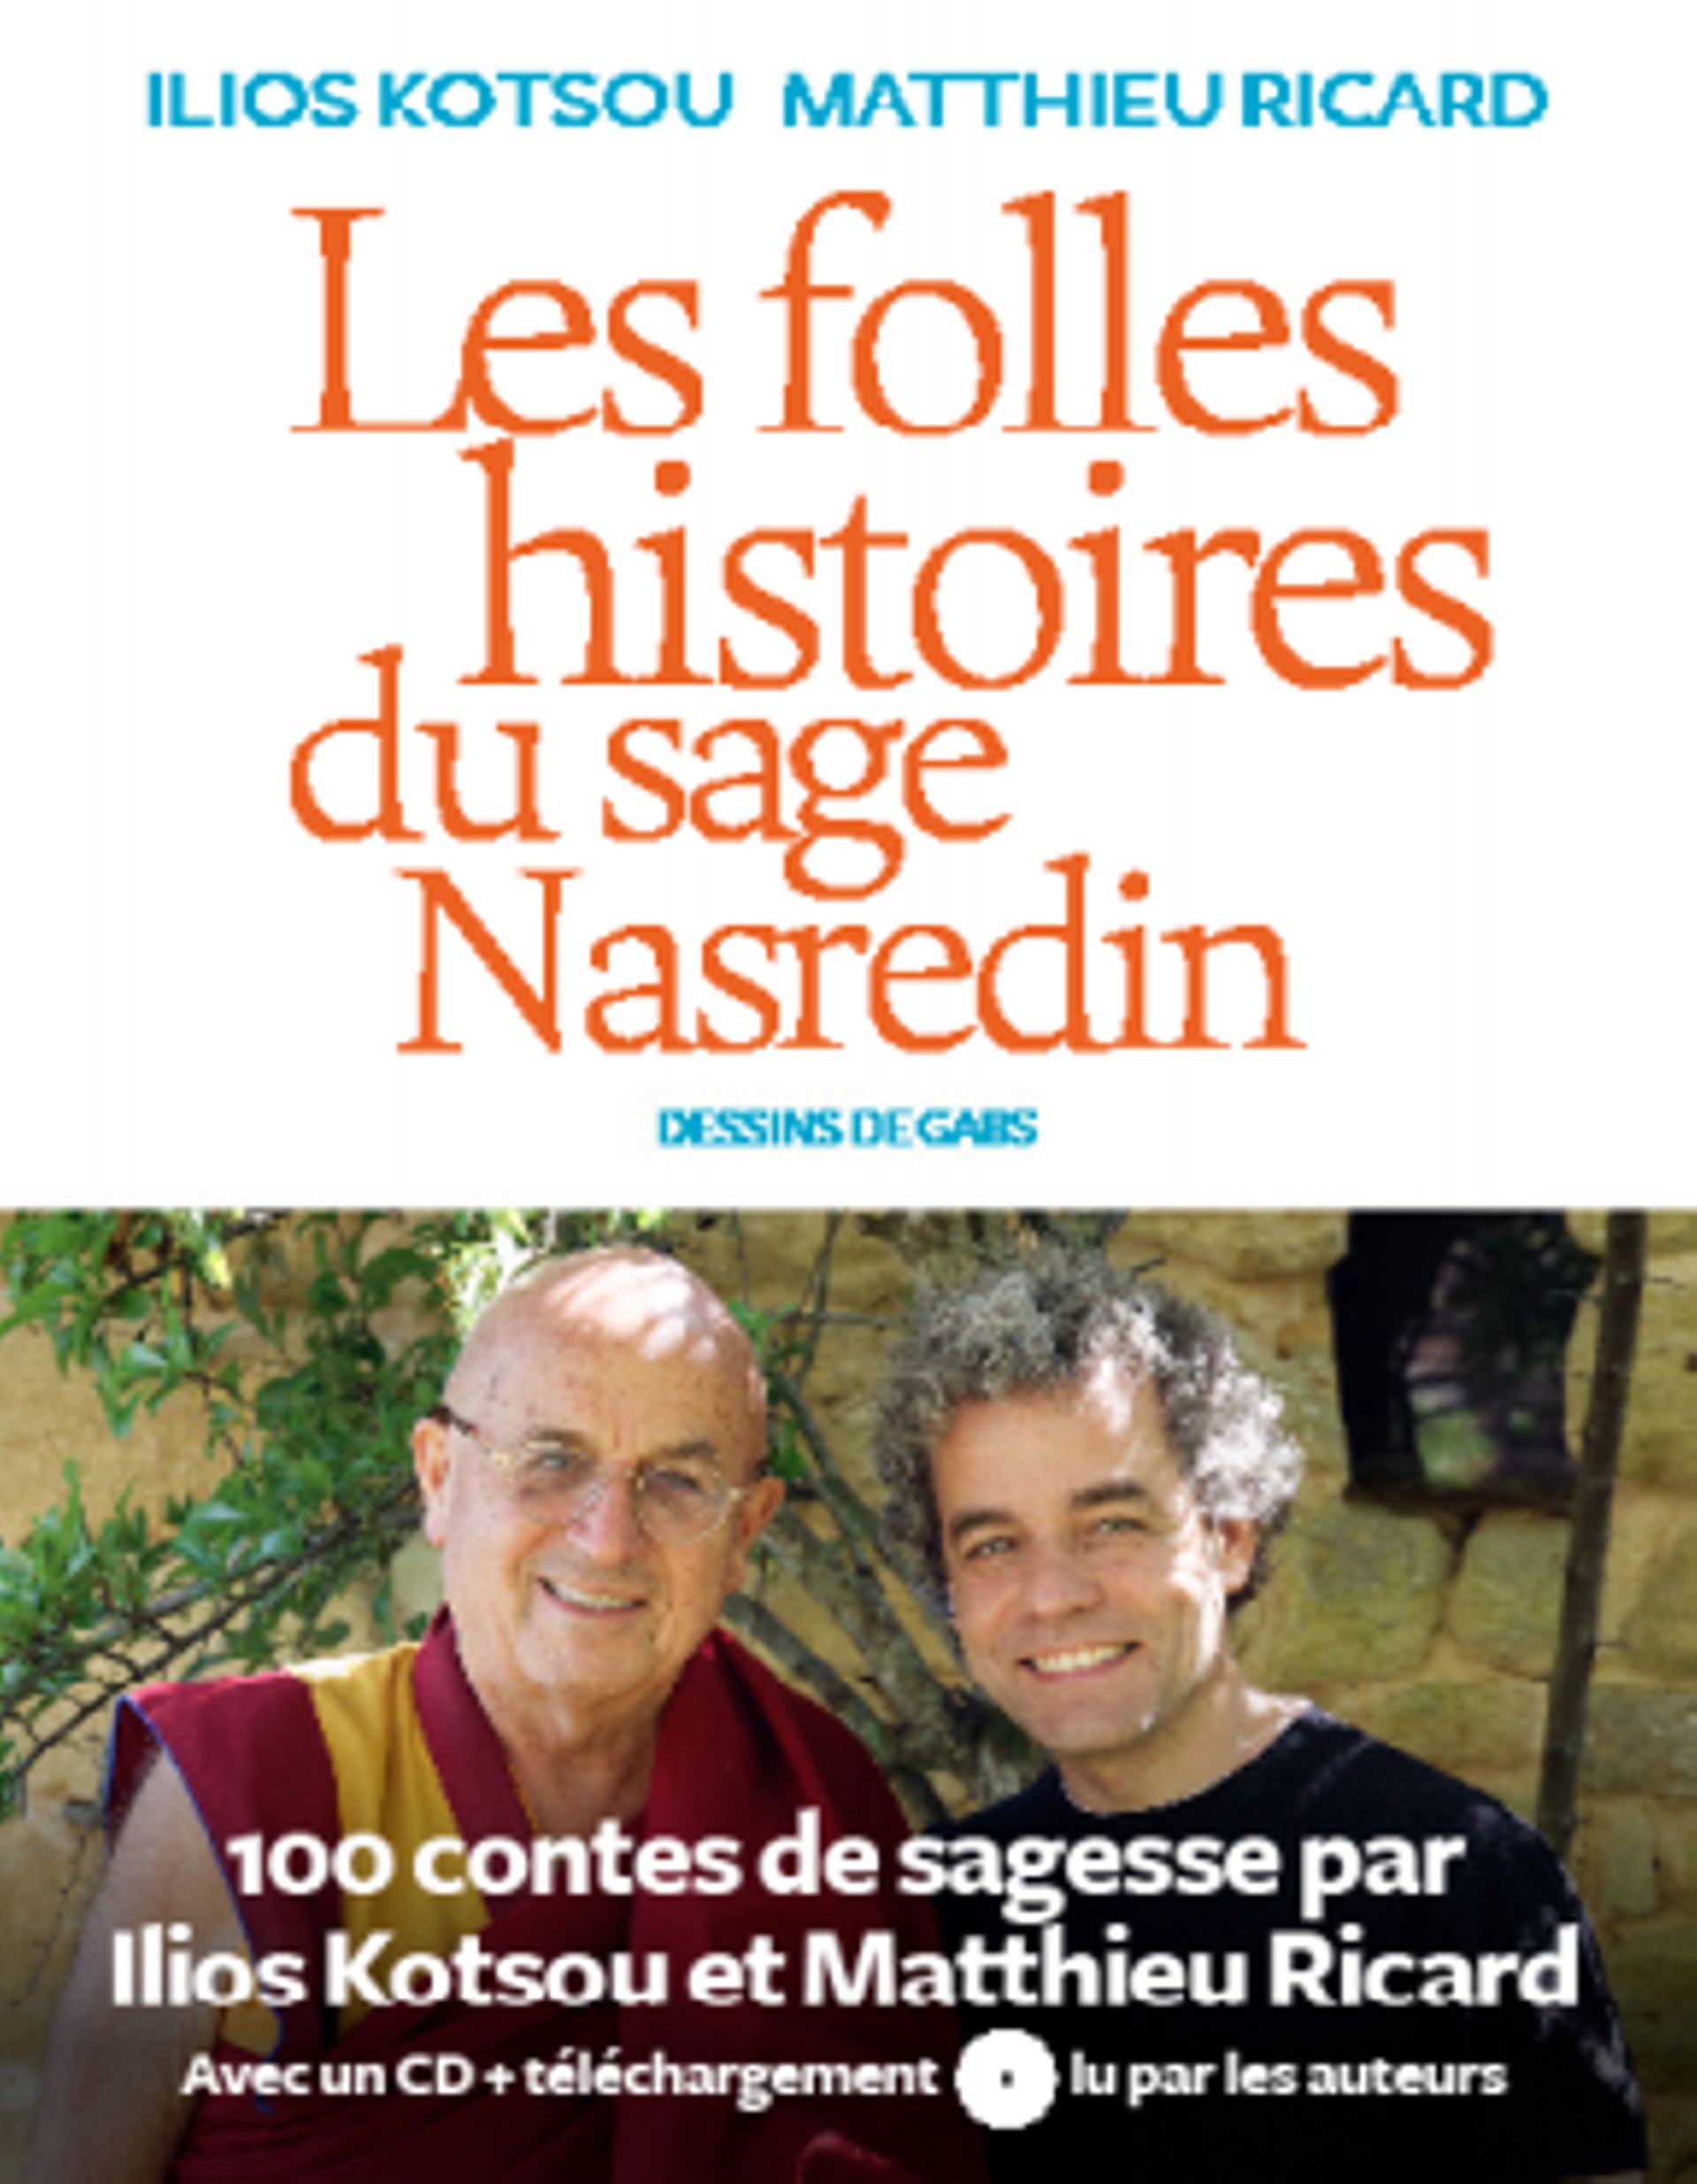 Les folles histoires du sage Nasredin, Ilios Kotsou et Matthieu Ricard